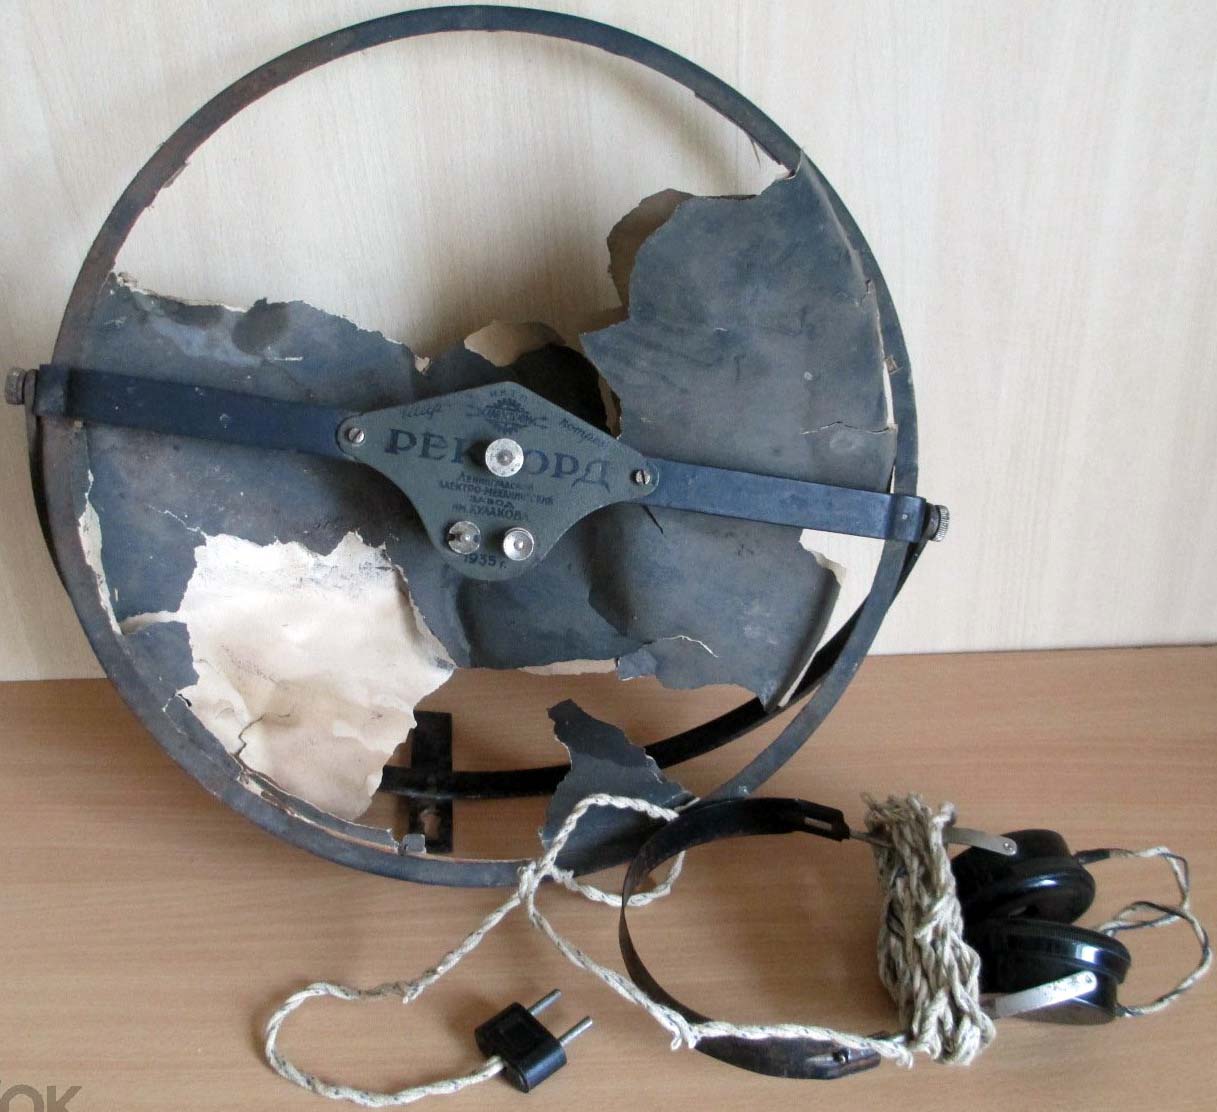 Старая старинная тарелка радиоприёмника + старые старинные калболитовые наушники